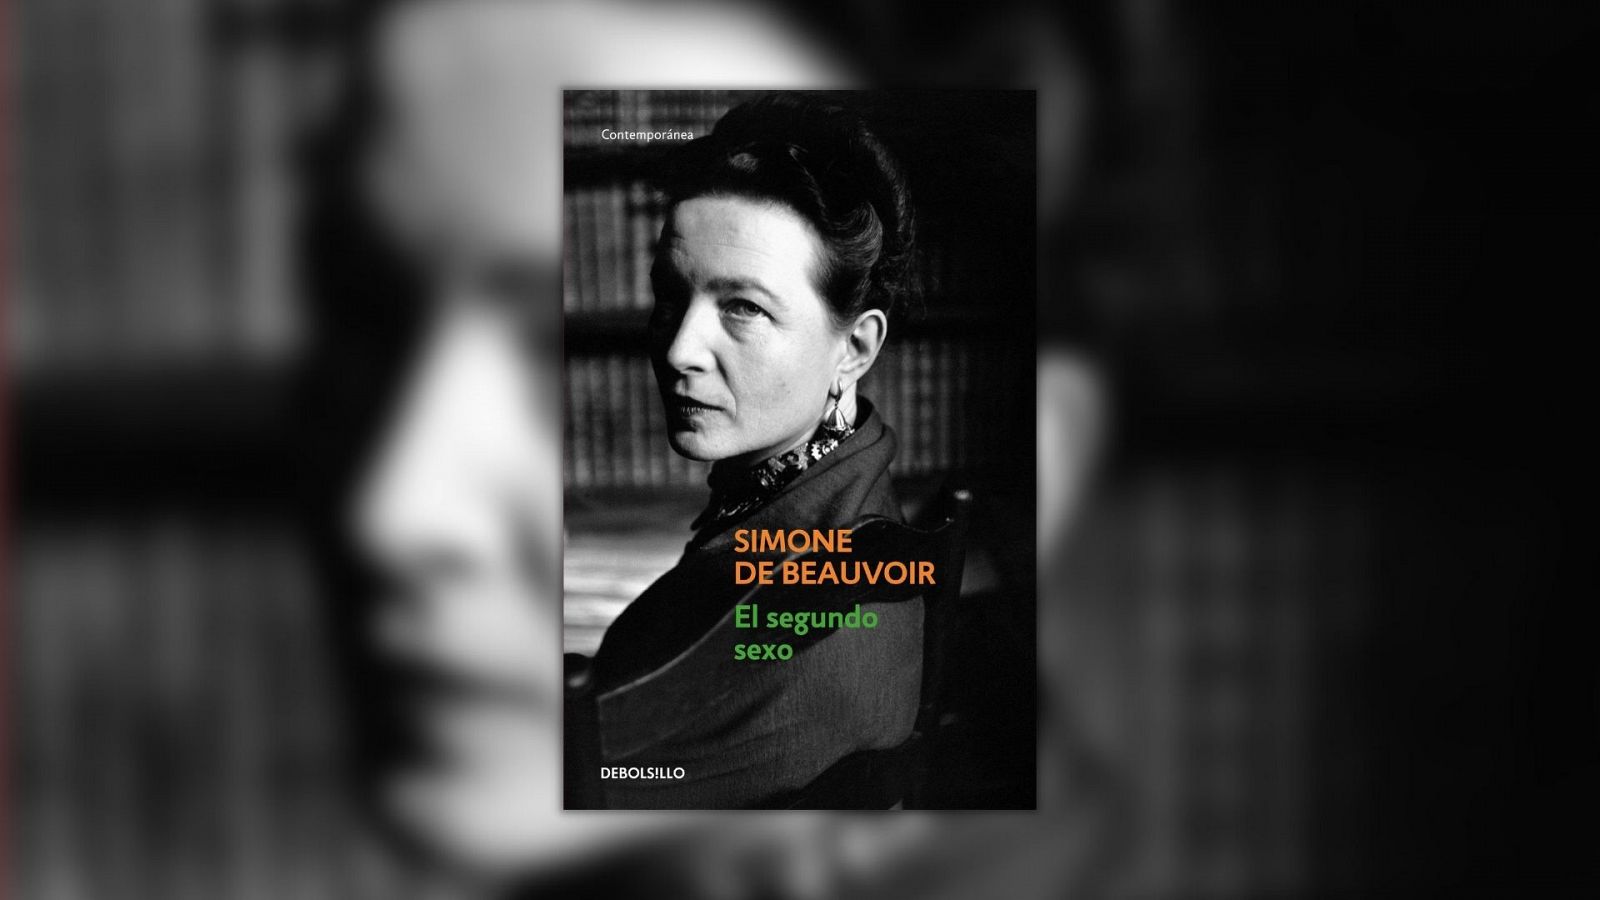 Gente despierta - La lucha de Simone de Beauvoir - Ángeles Caso - "Mujeres" - Escuchar ahora